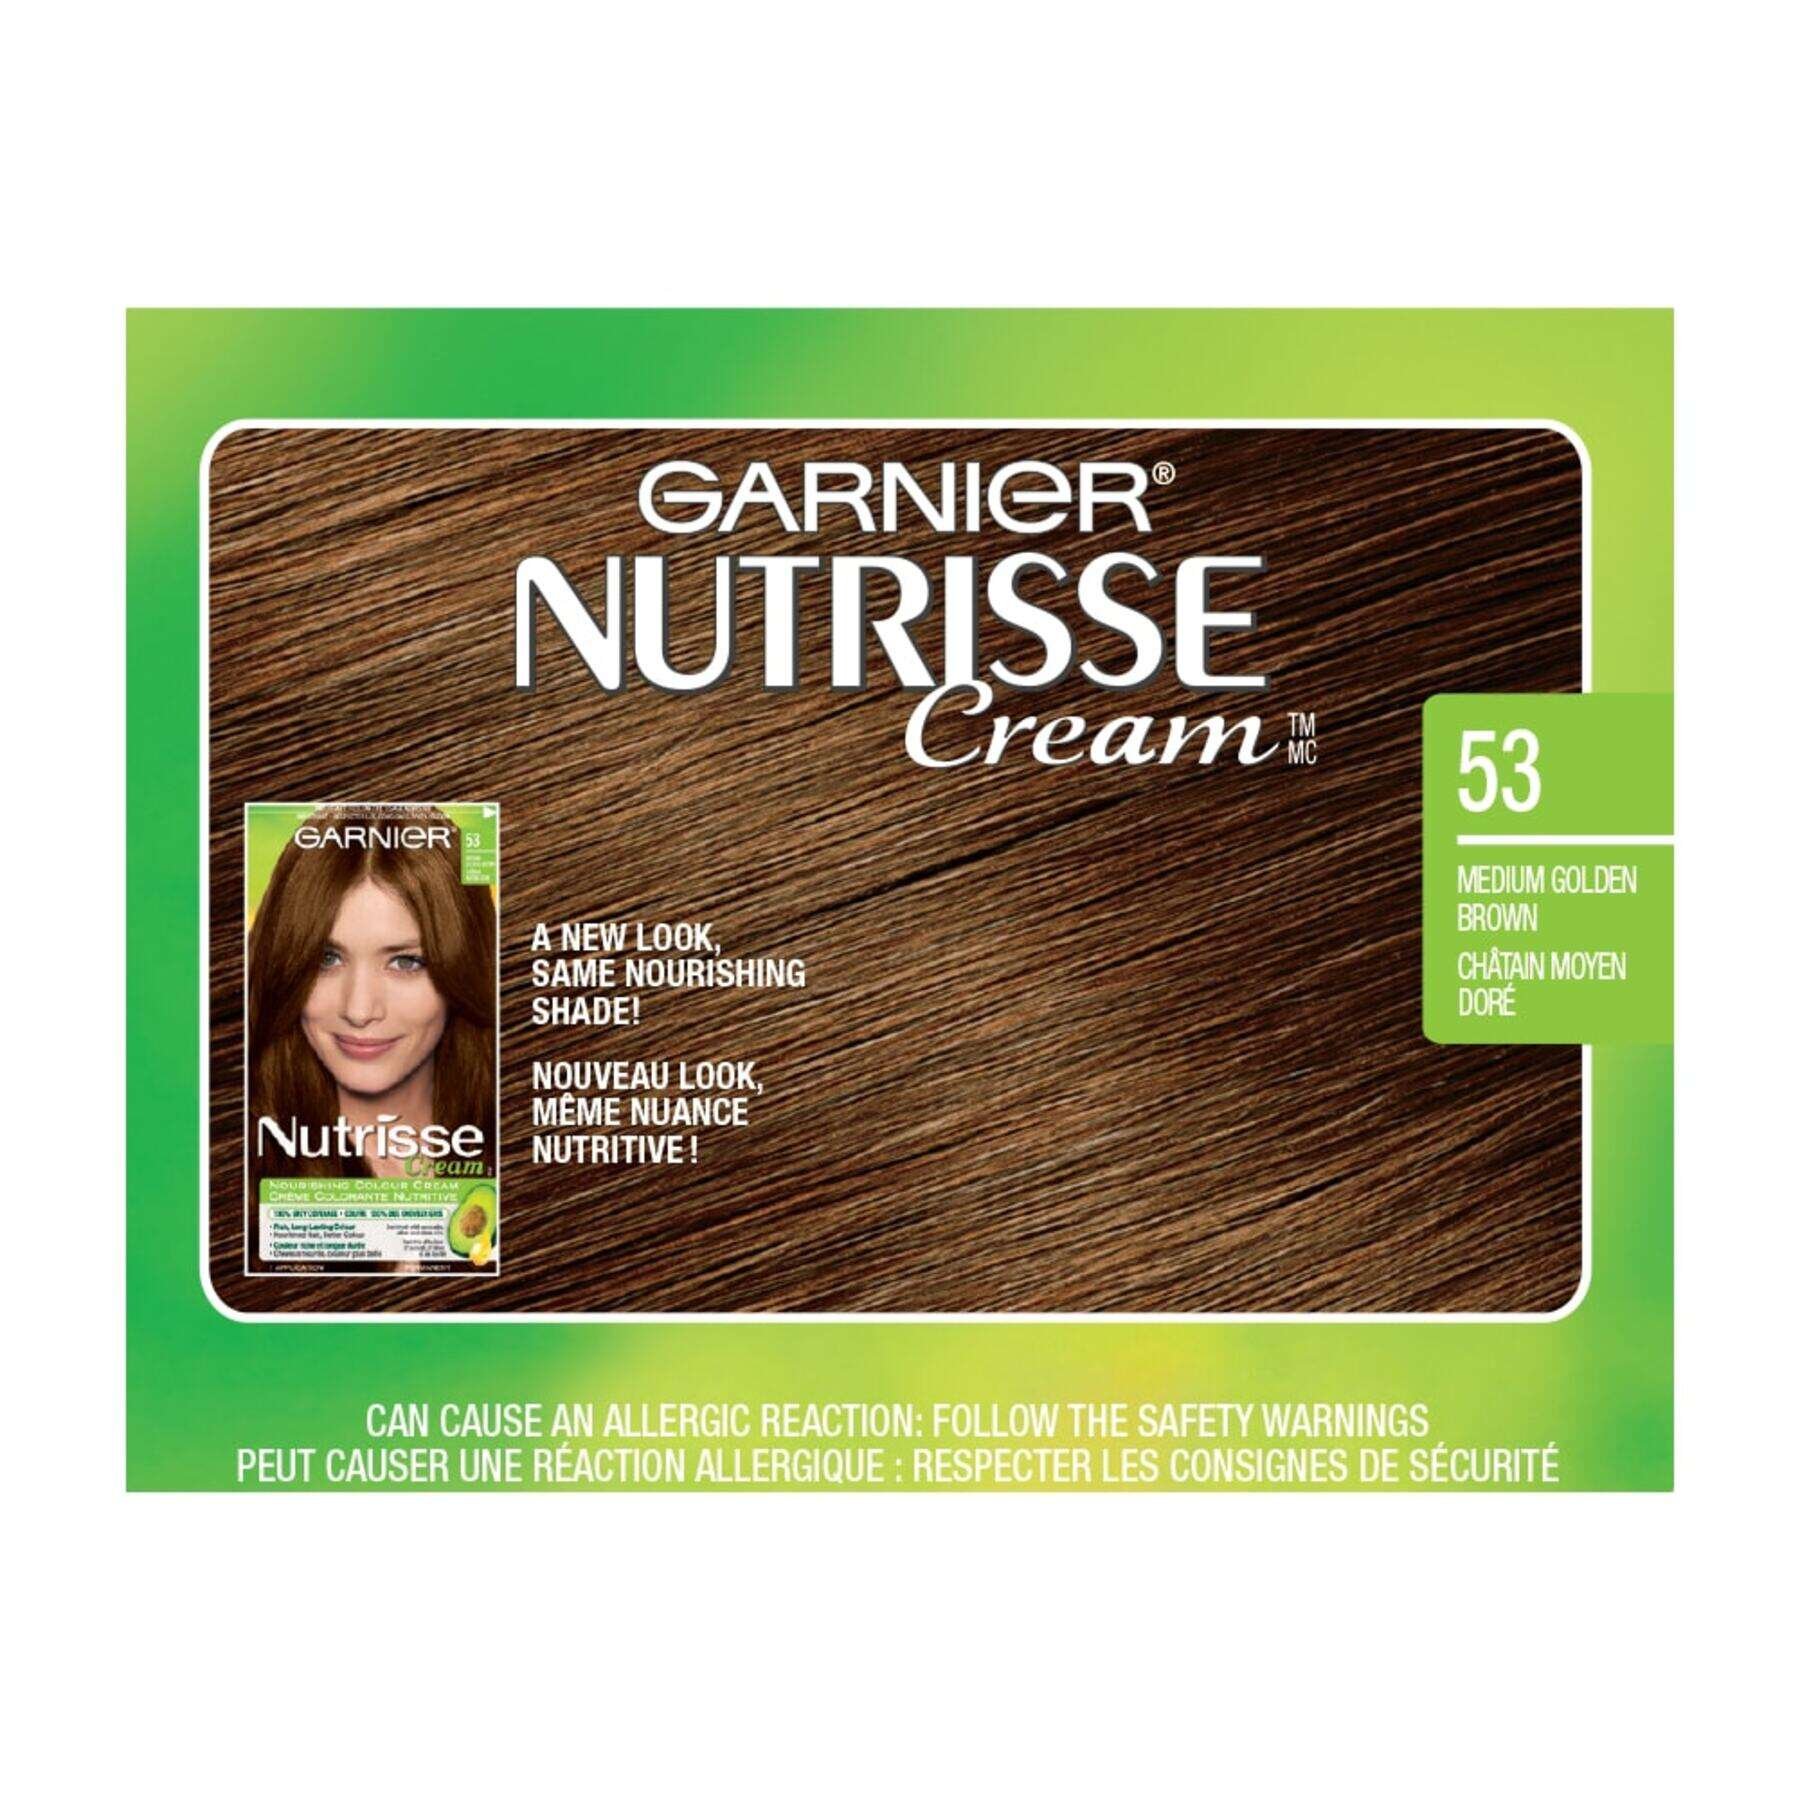 garnier hair dye nutrisse cream 53 medium golden brown 0770103447094 swatch